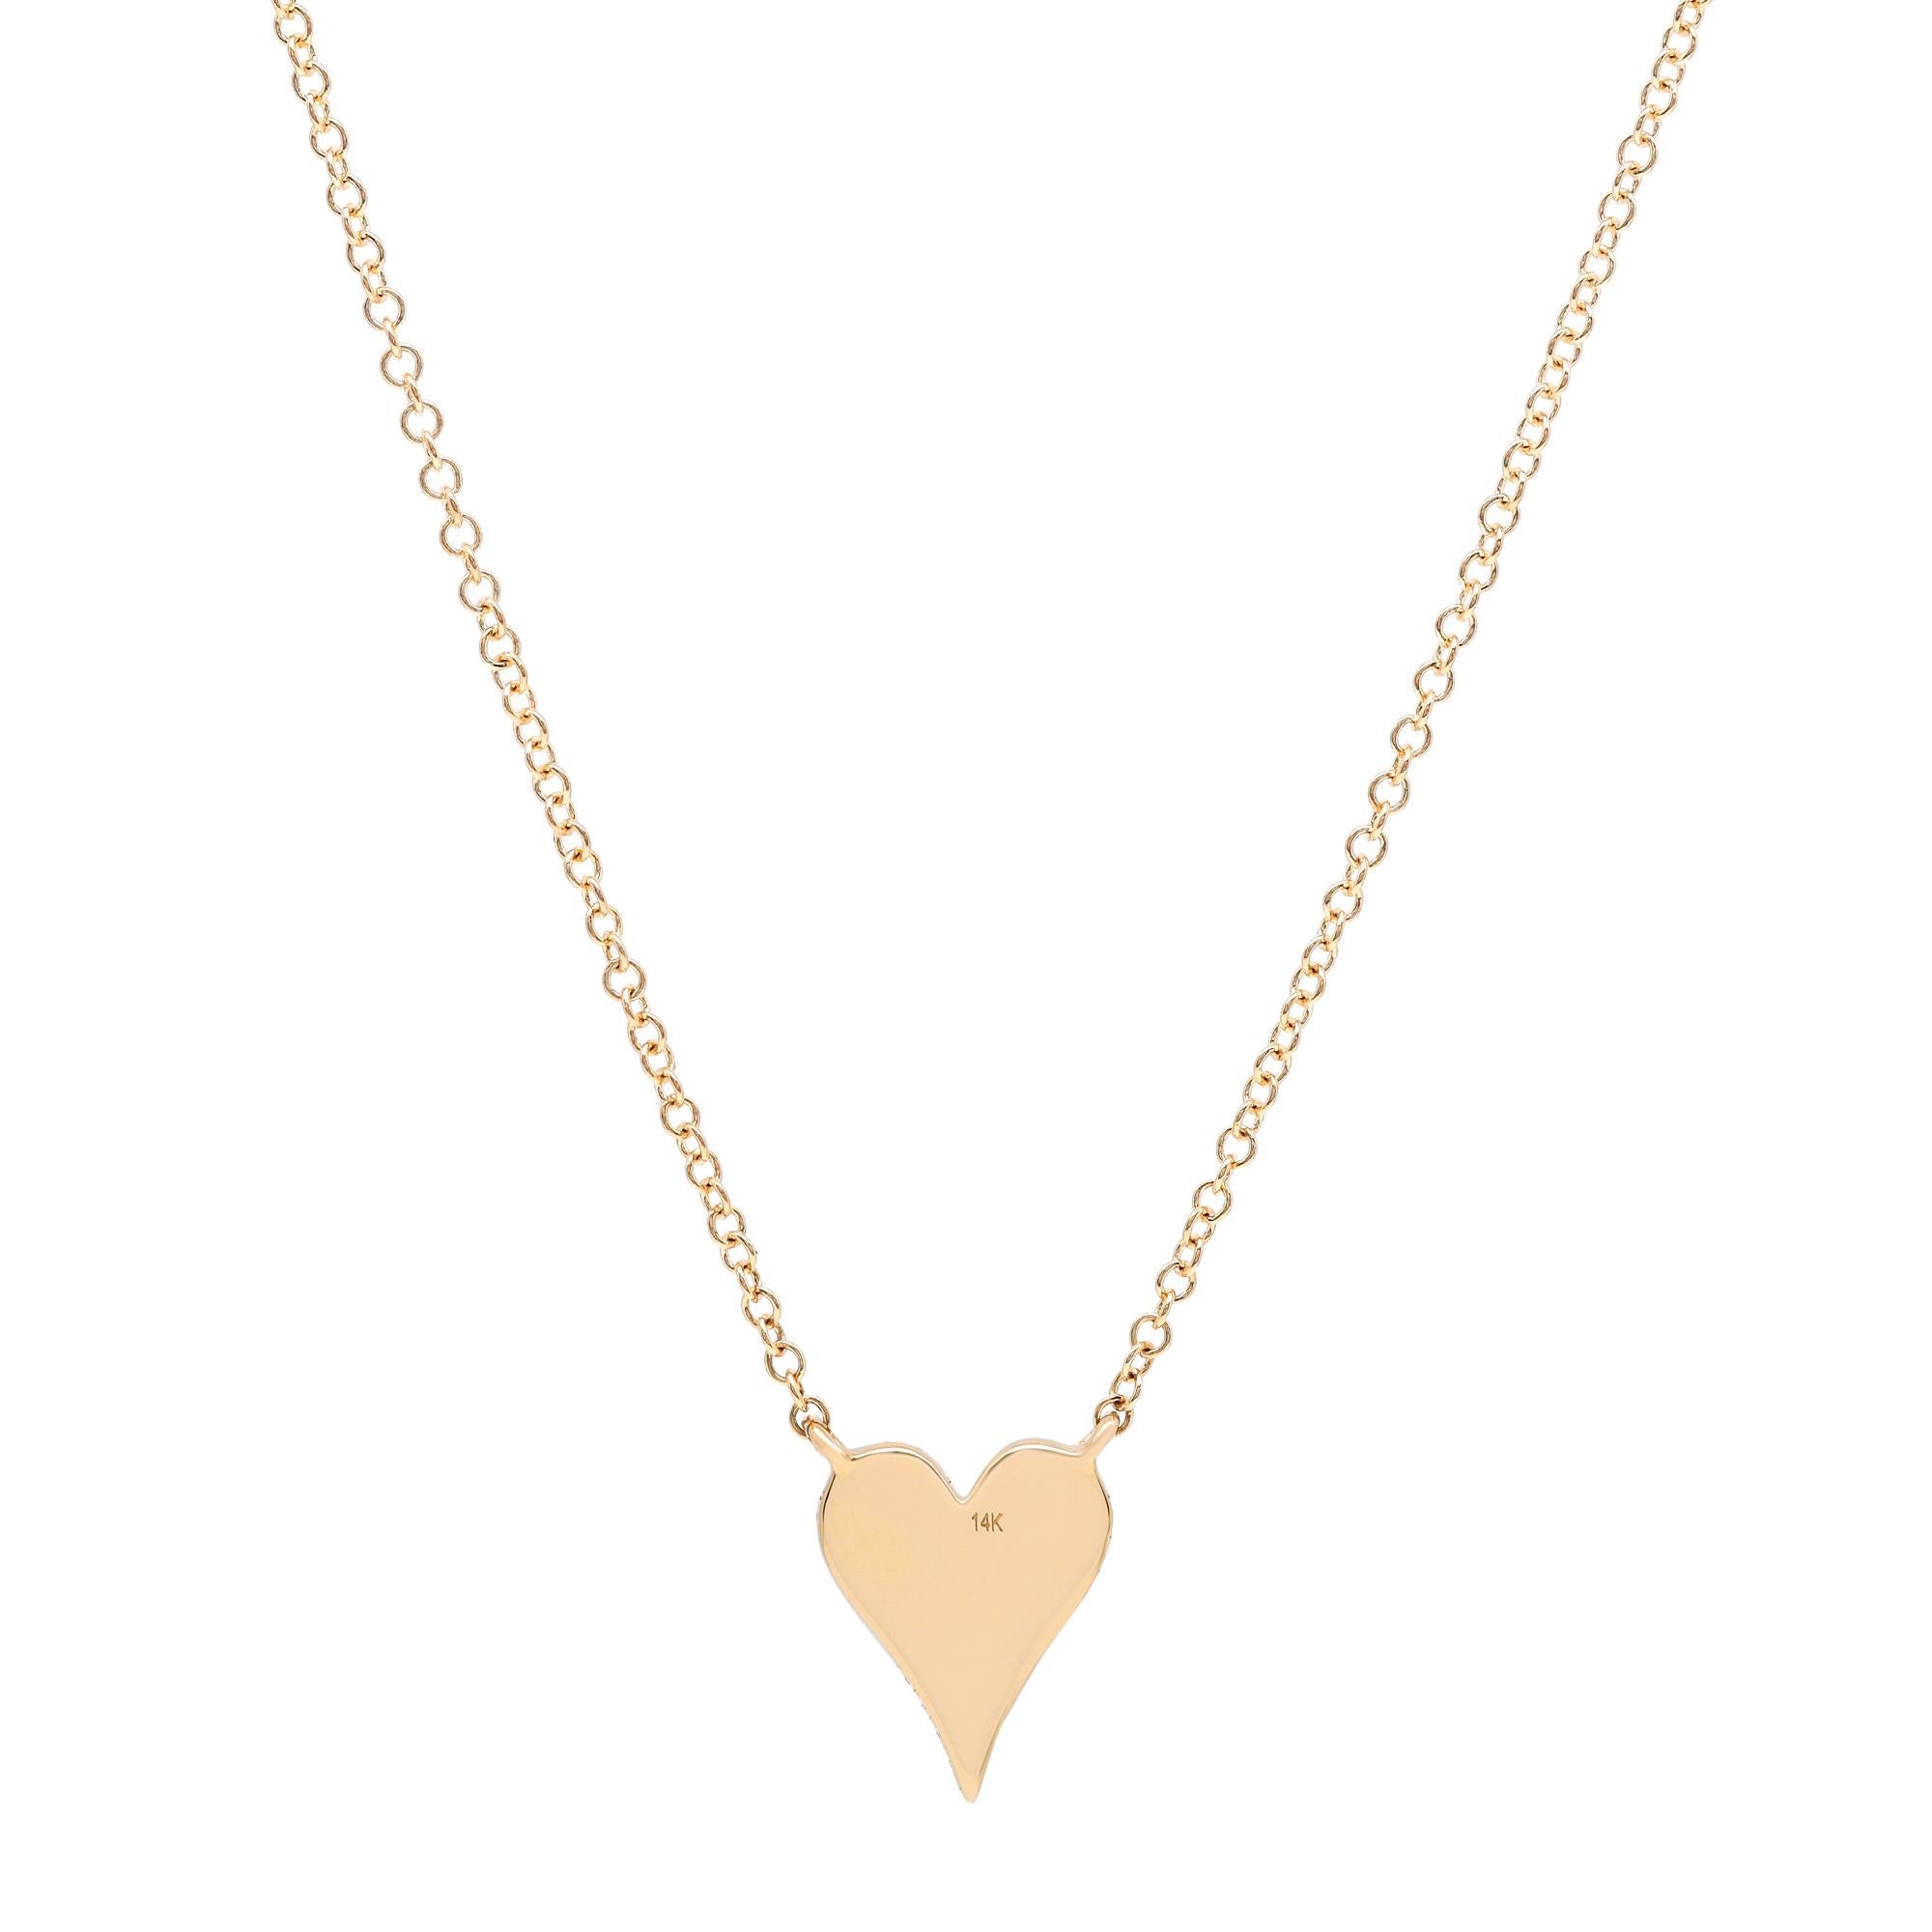 Round Cut 0.11Cttw Rachel Koen Pave Diamond Heart Pendant Necklace 14K Yellow Gold For Sale